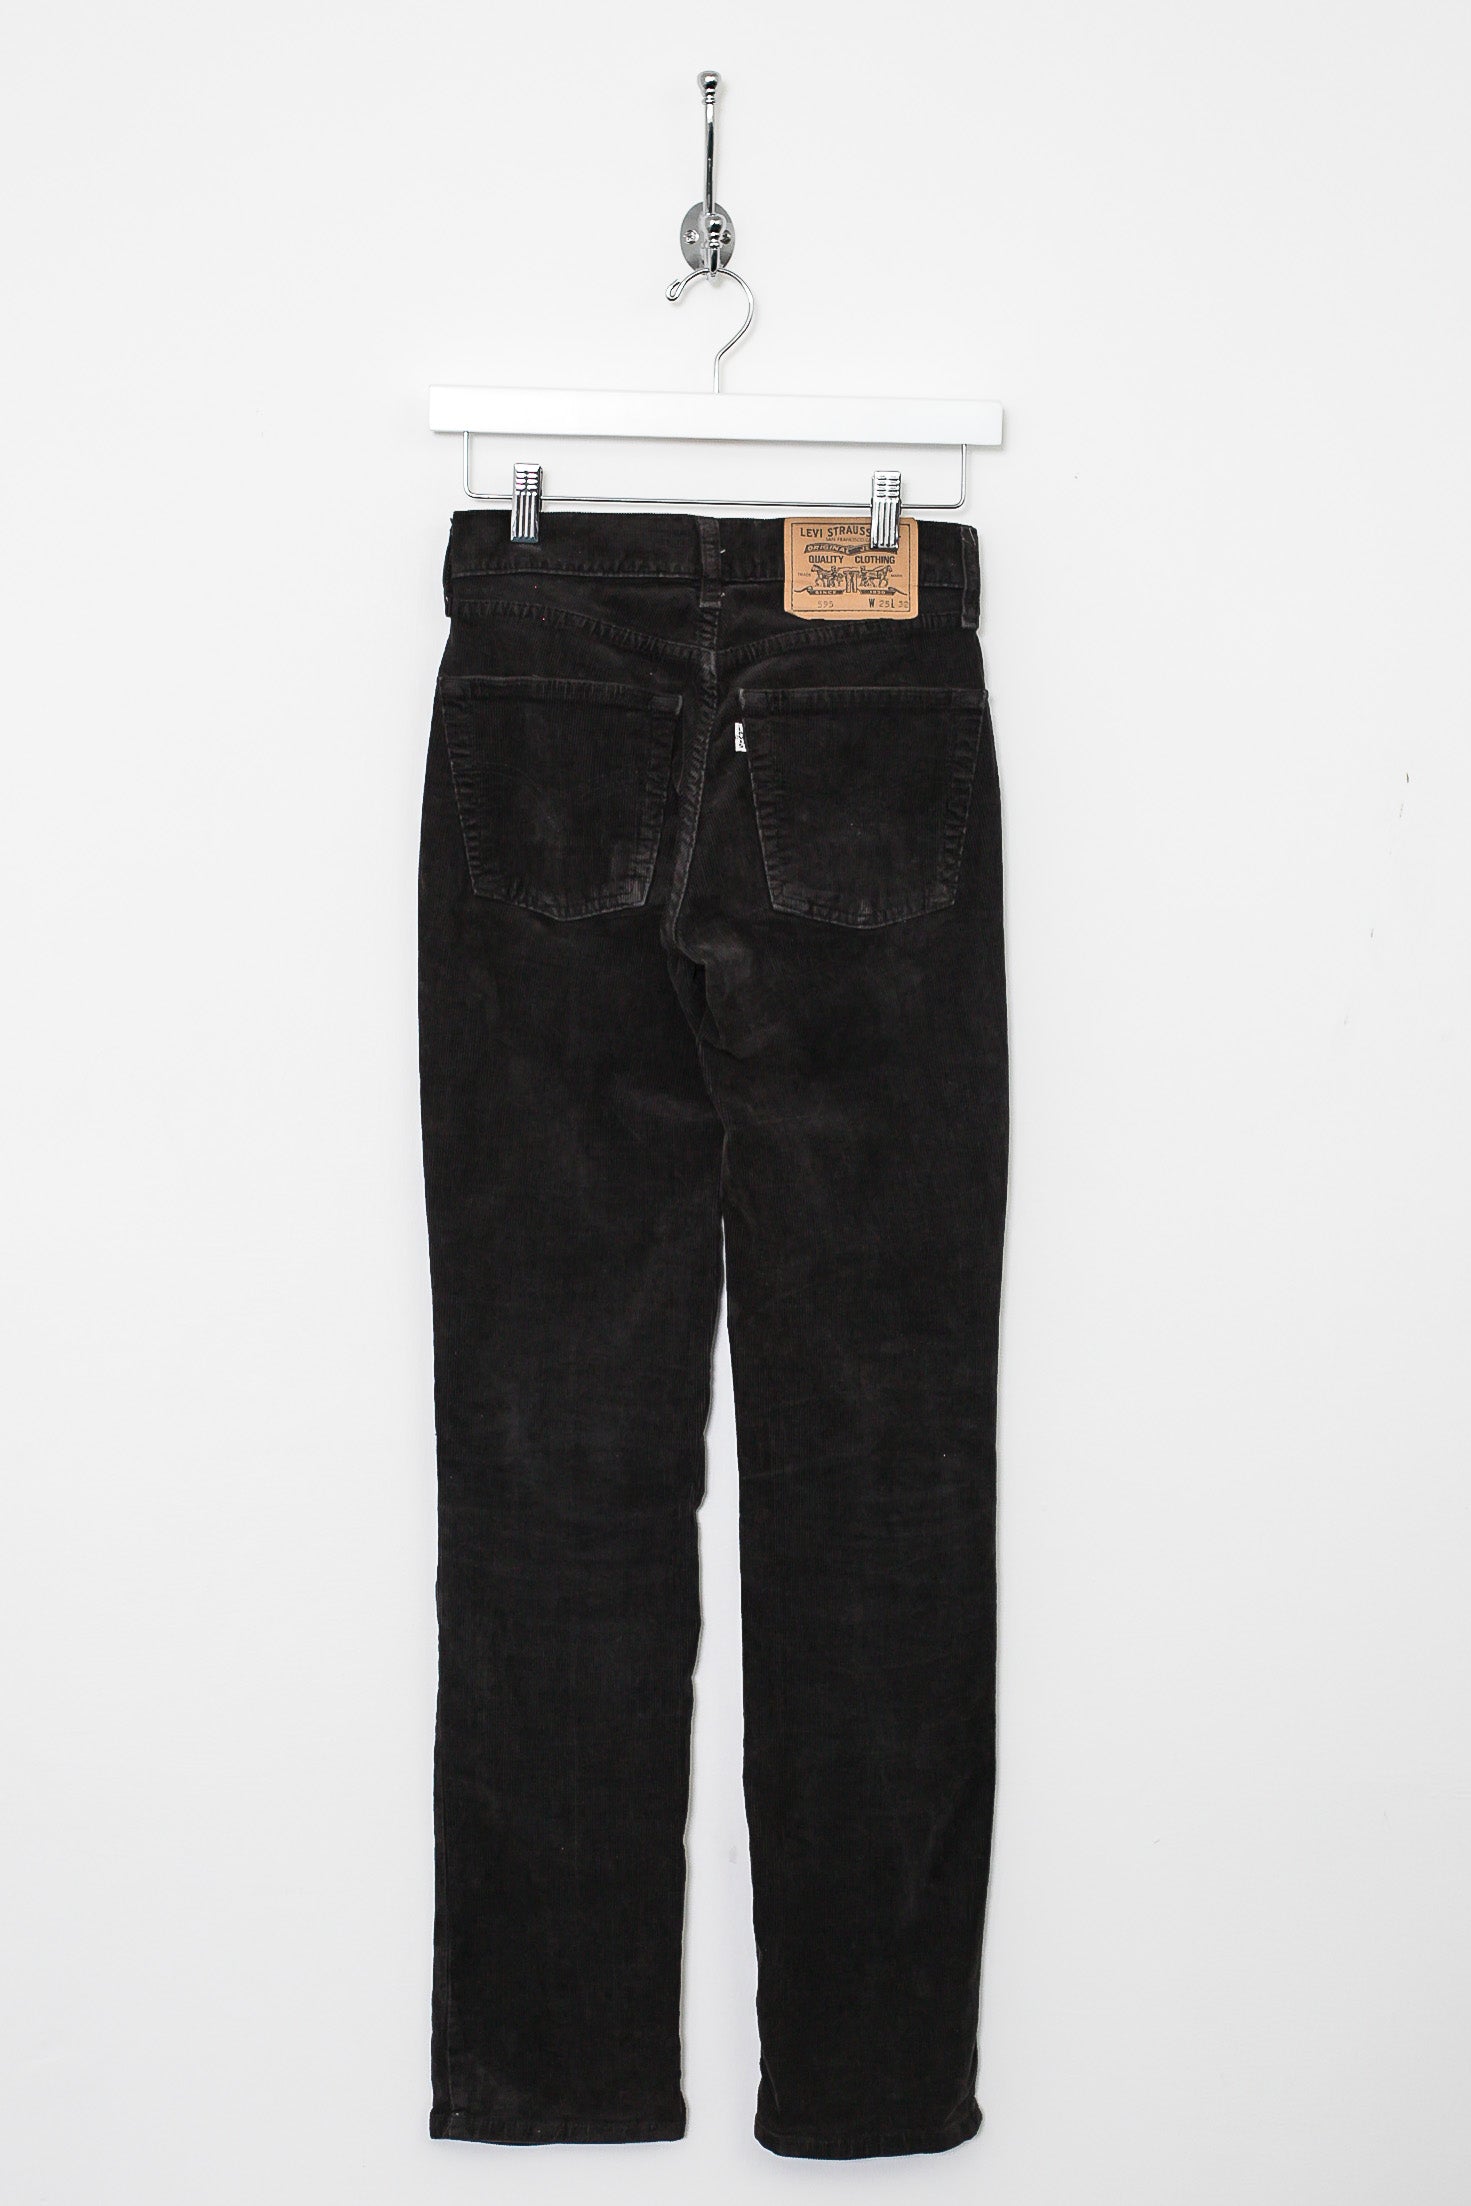 Vintage Levis 508 Corduroy Pants W 32 L 34 – dla dushy